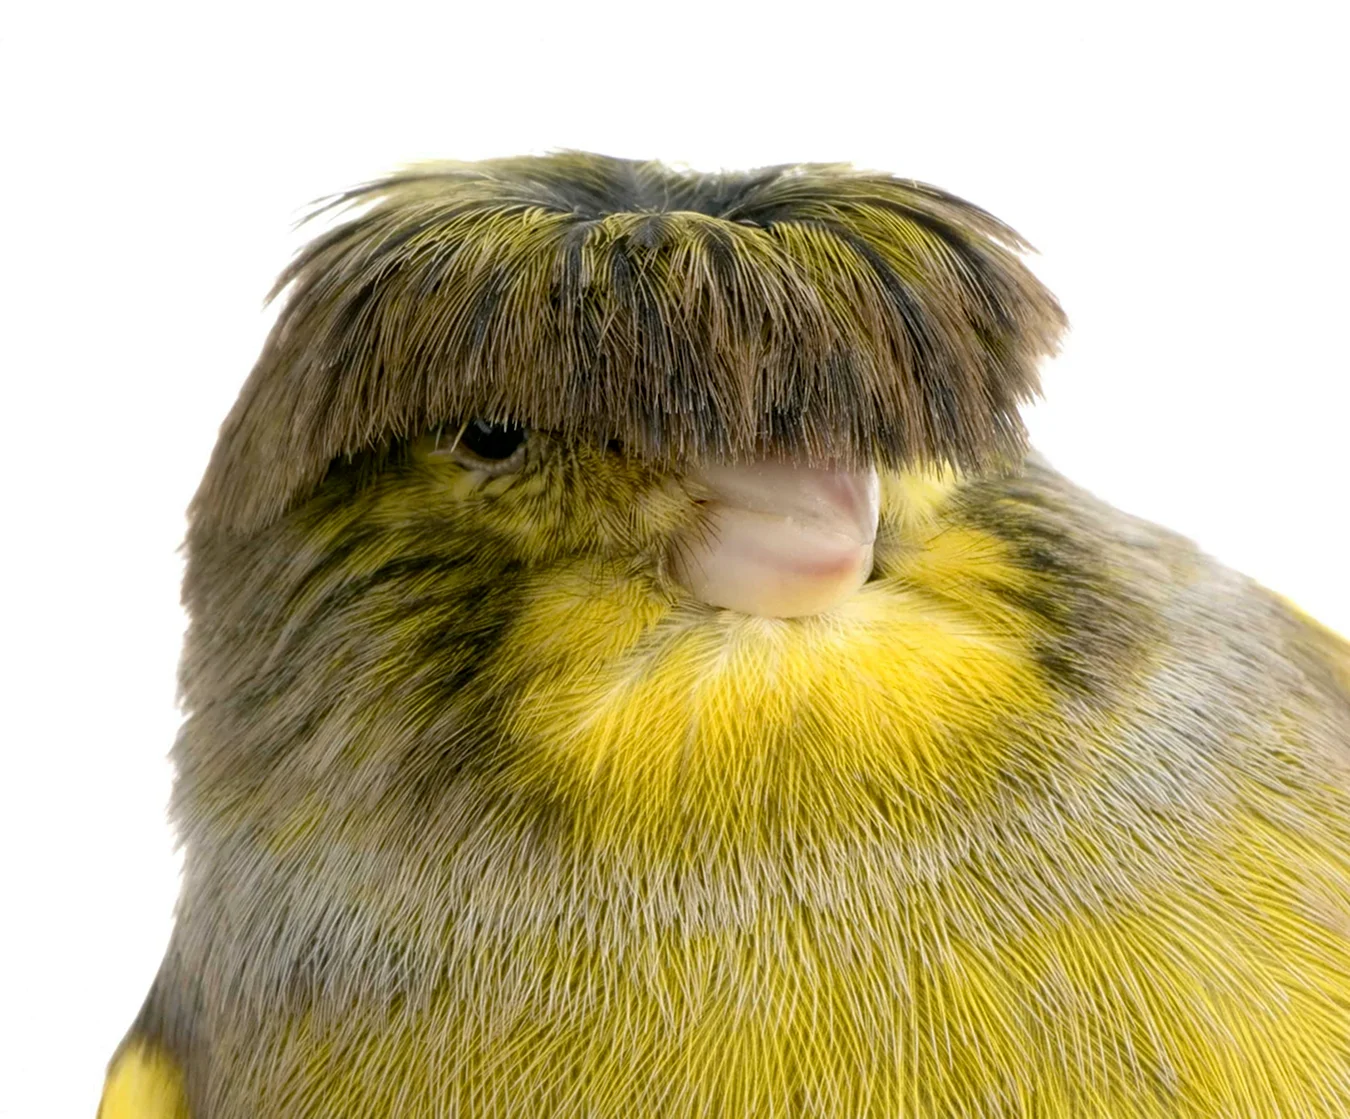 Птица с прической на голове